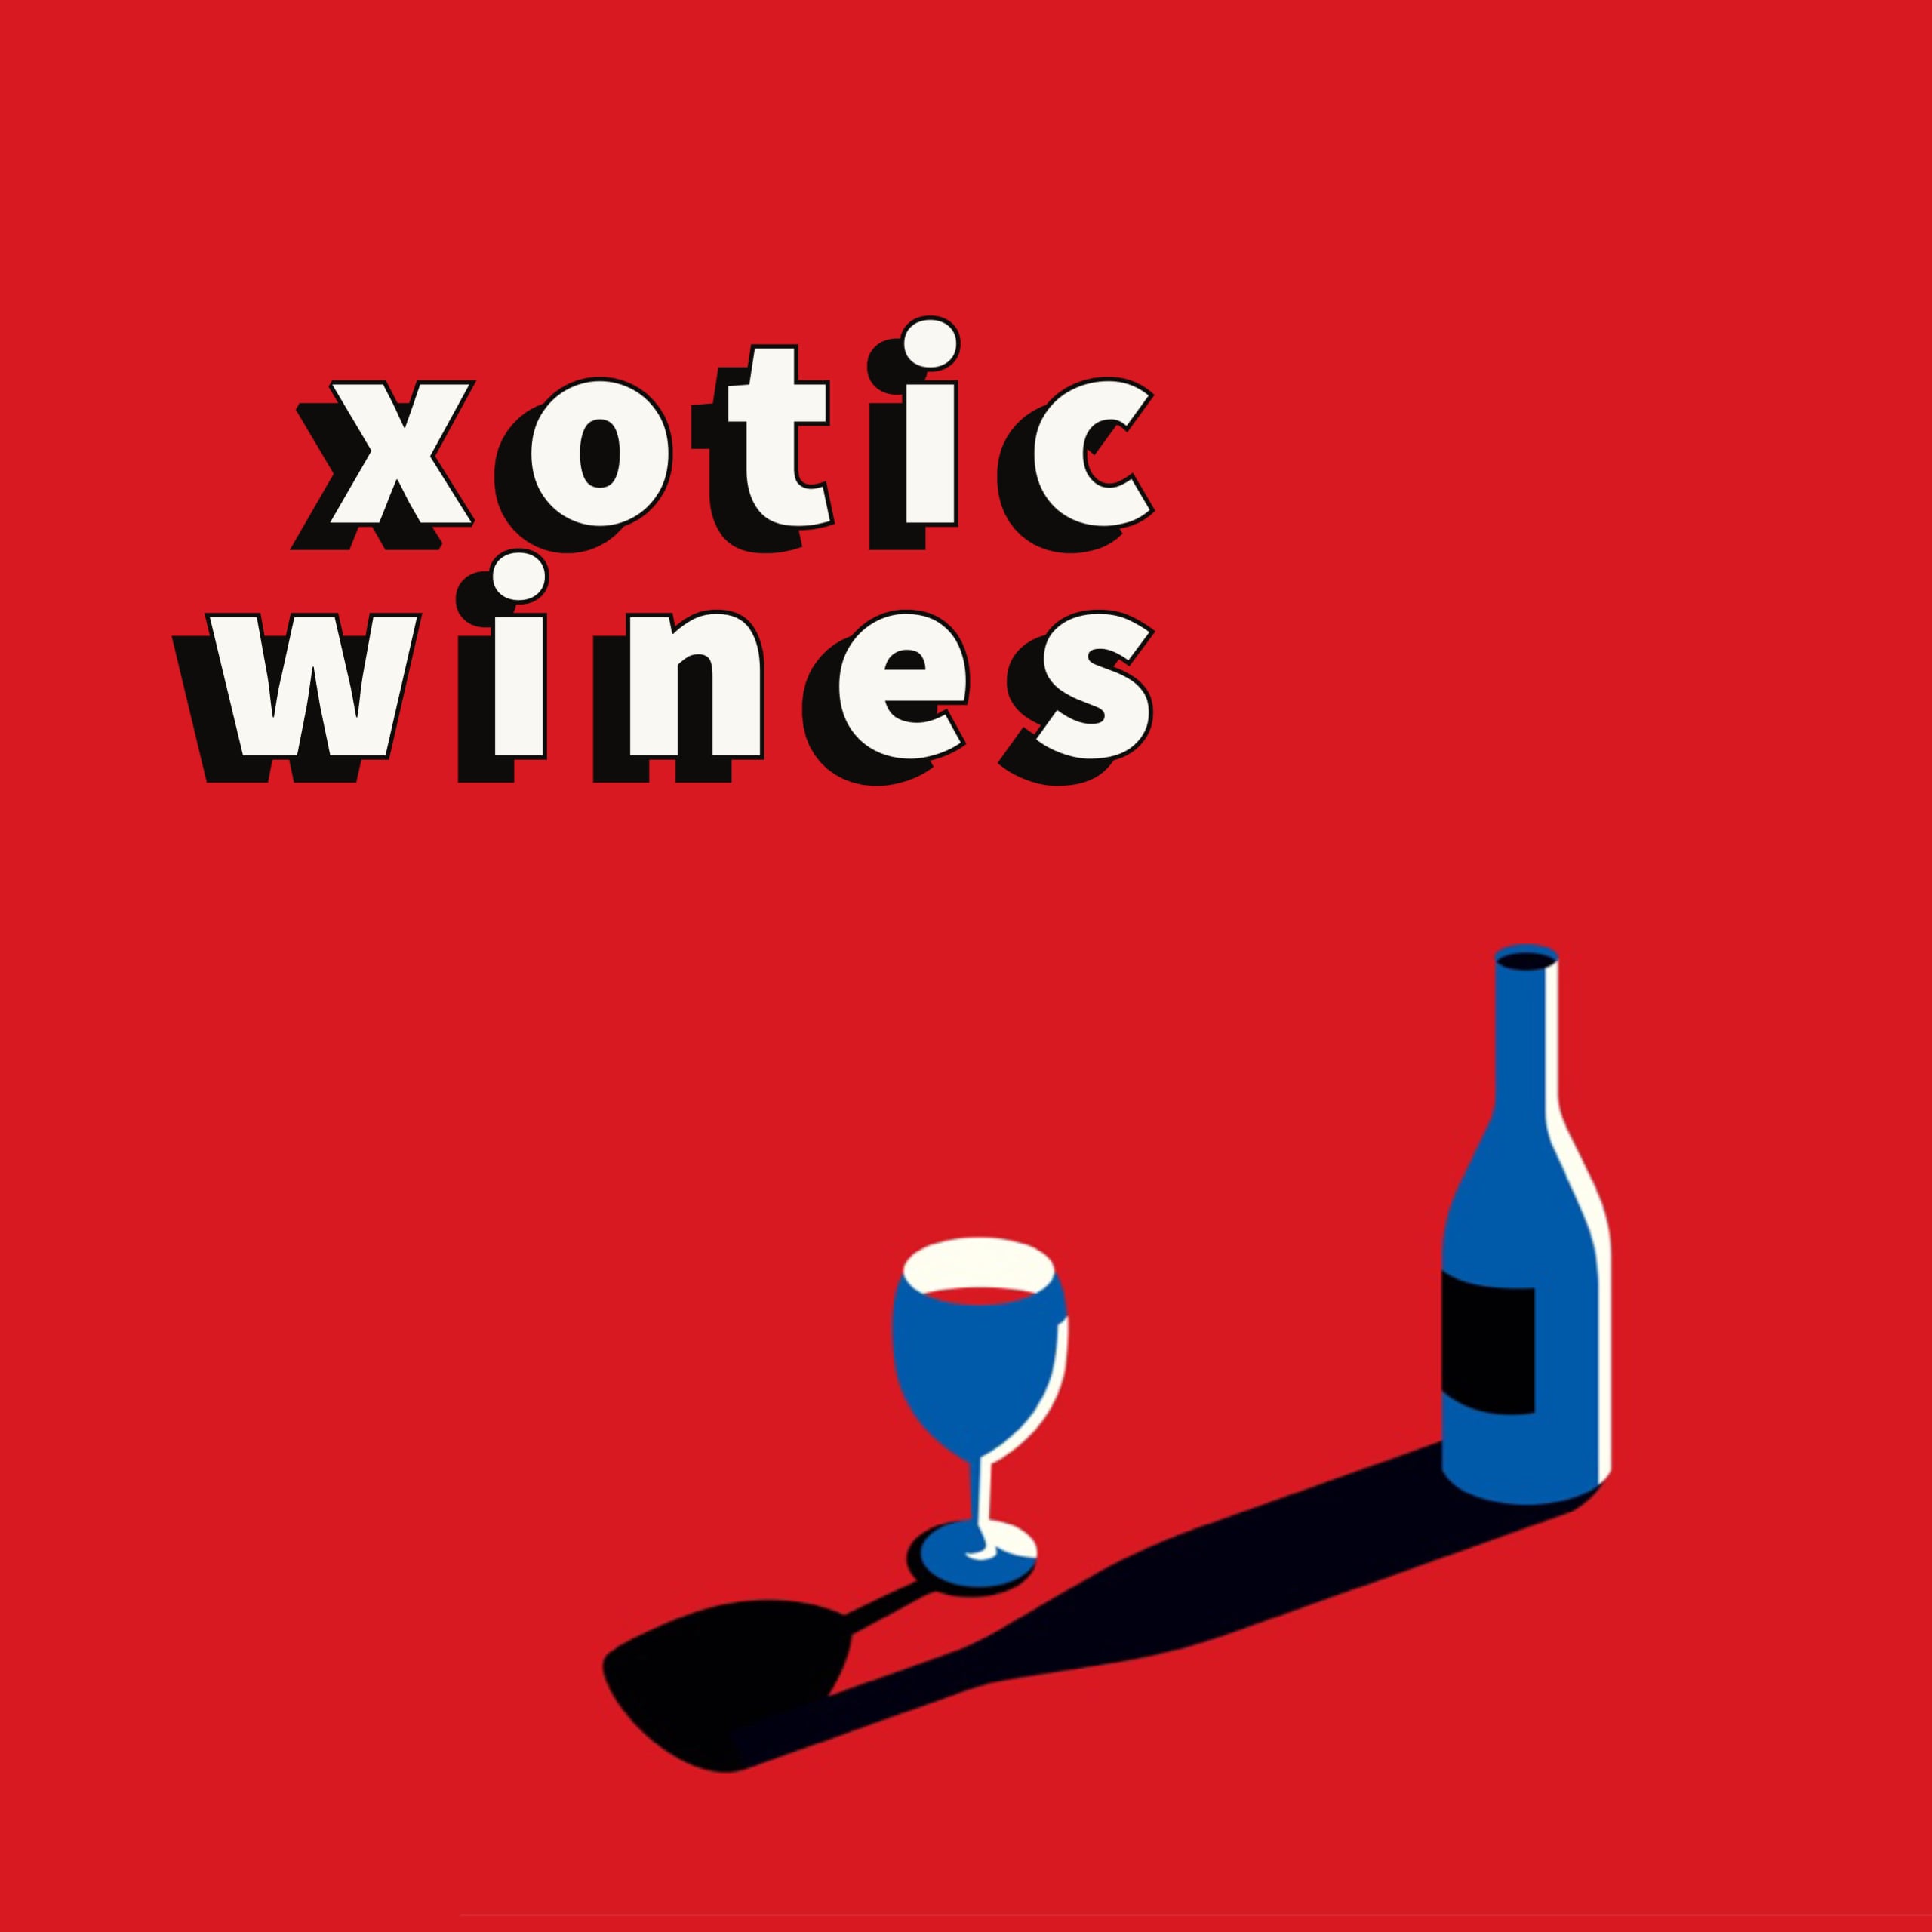 xotic wines